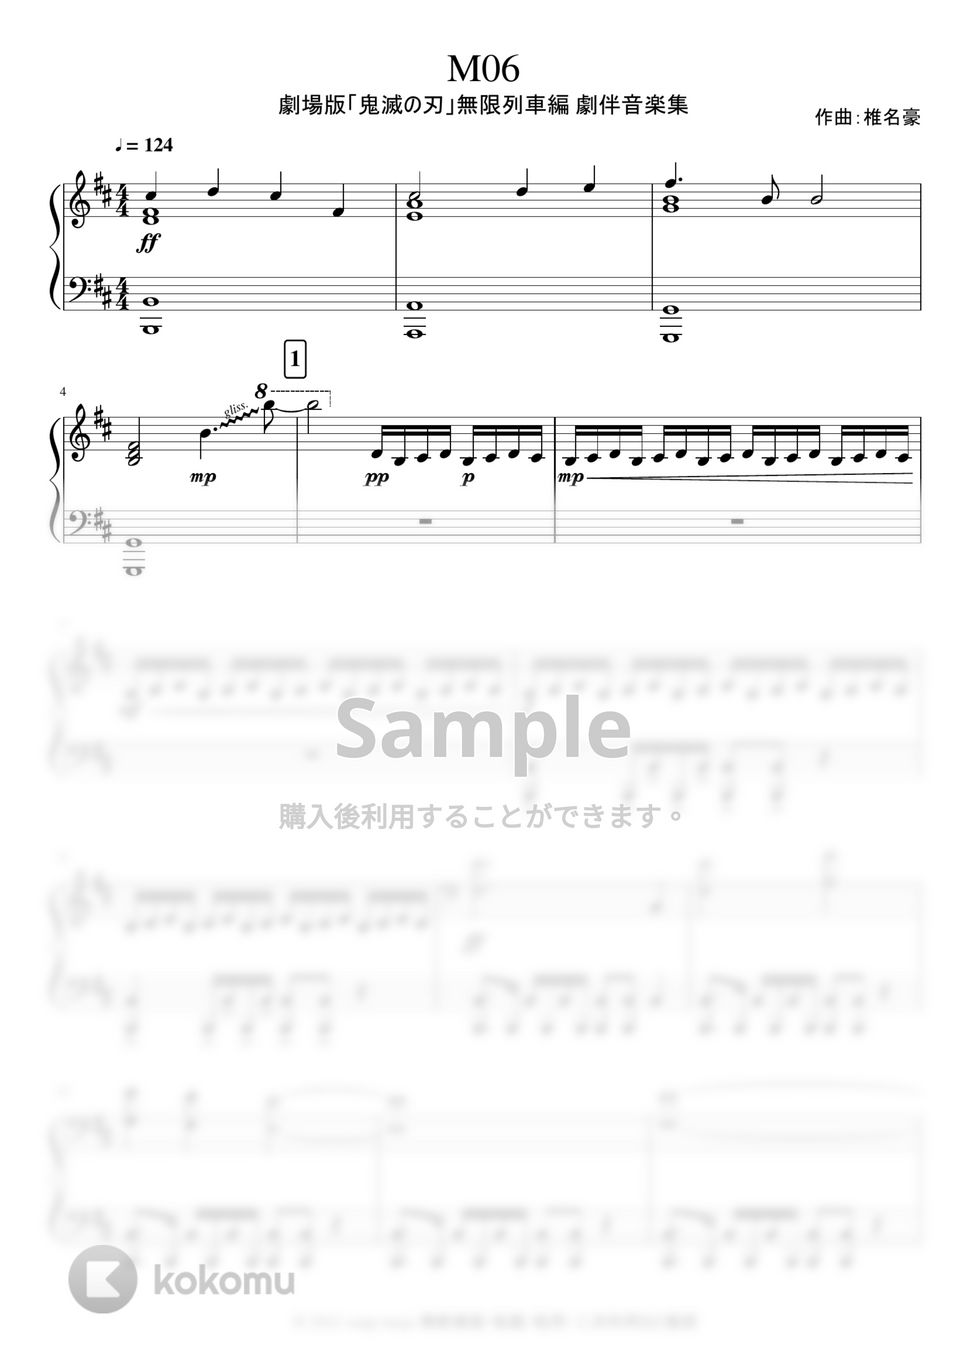 鬼滅の刃 - サントラ楽譜集 vol.2 (12曲) 楽譜 by soup-majo